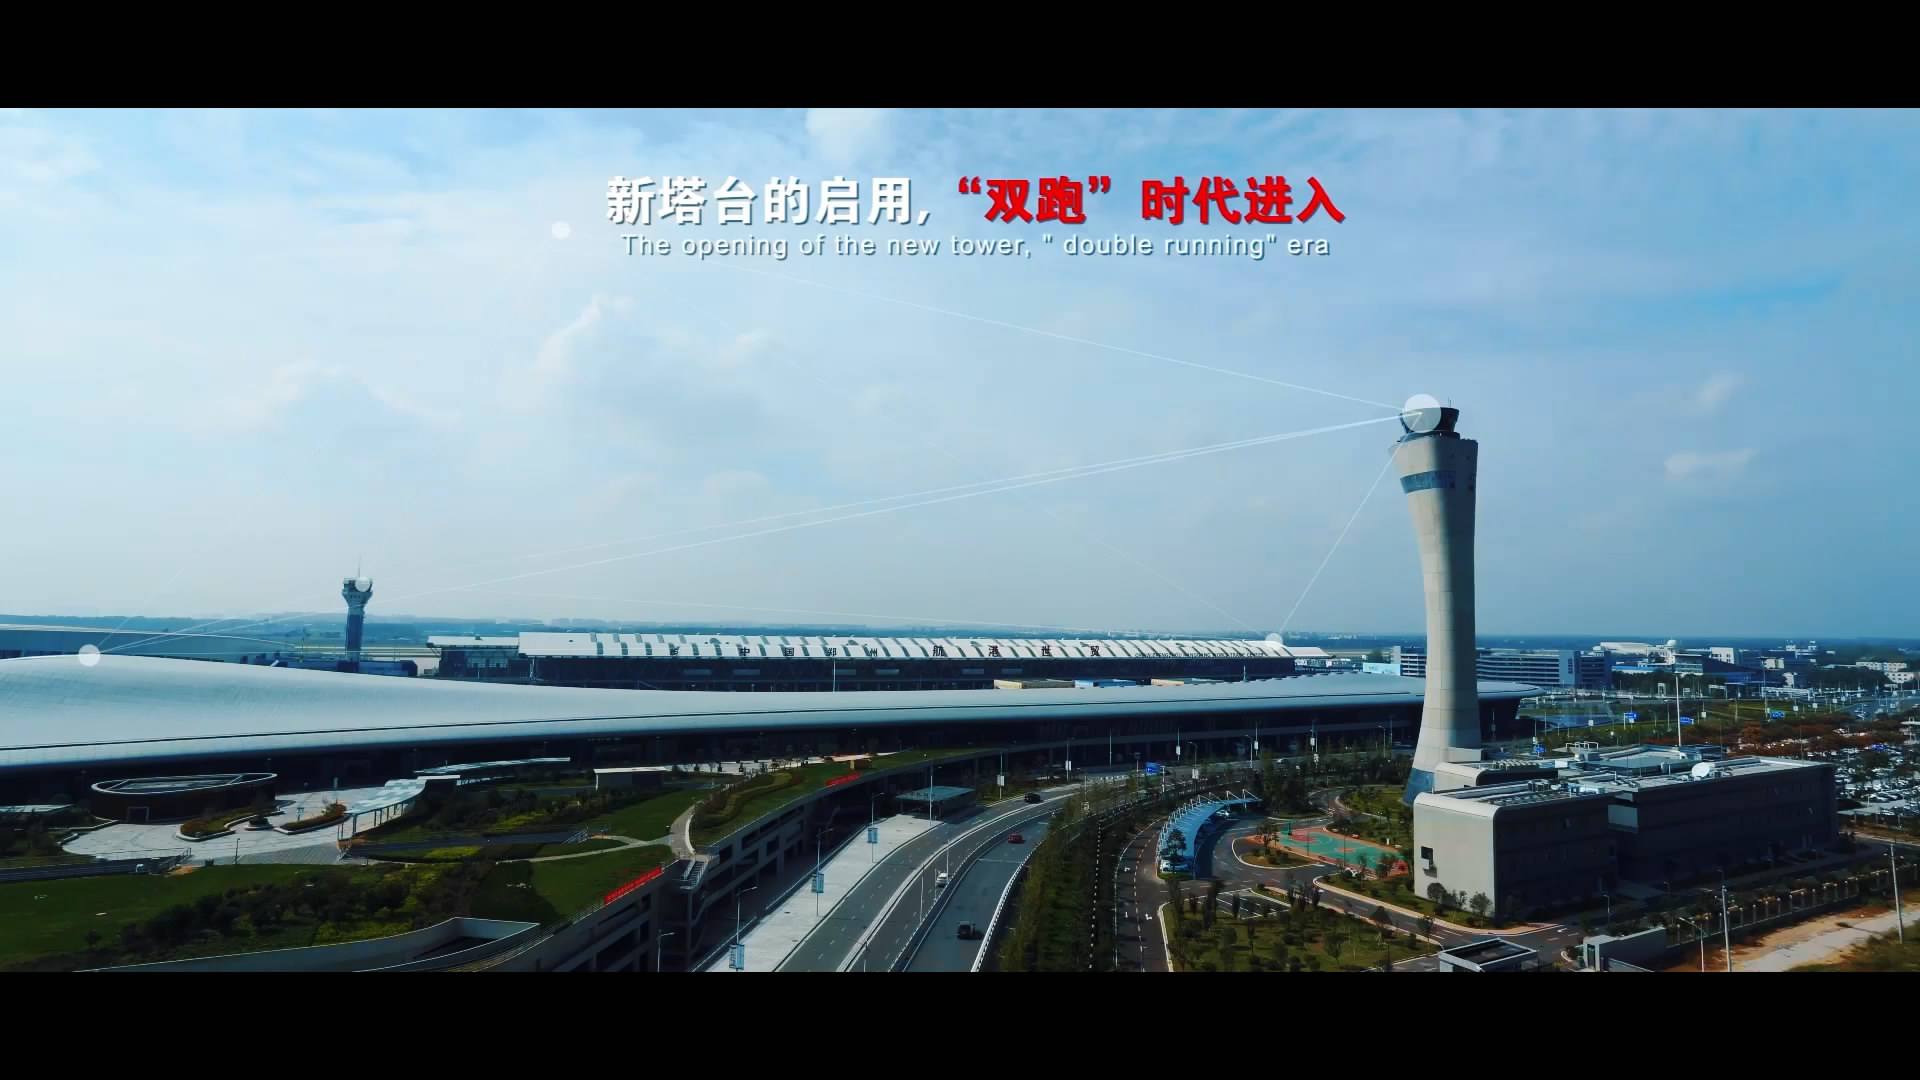 新郑机场宣传片这样拍摄